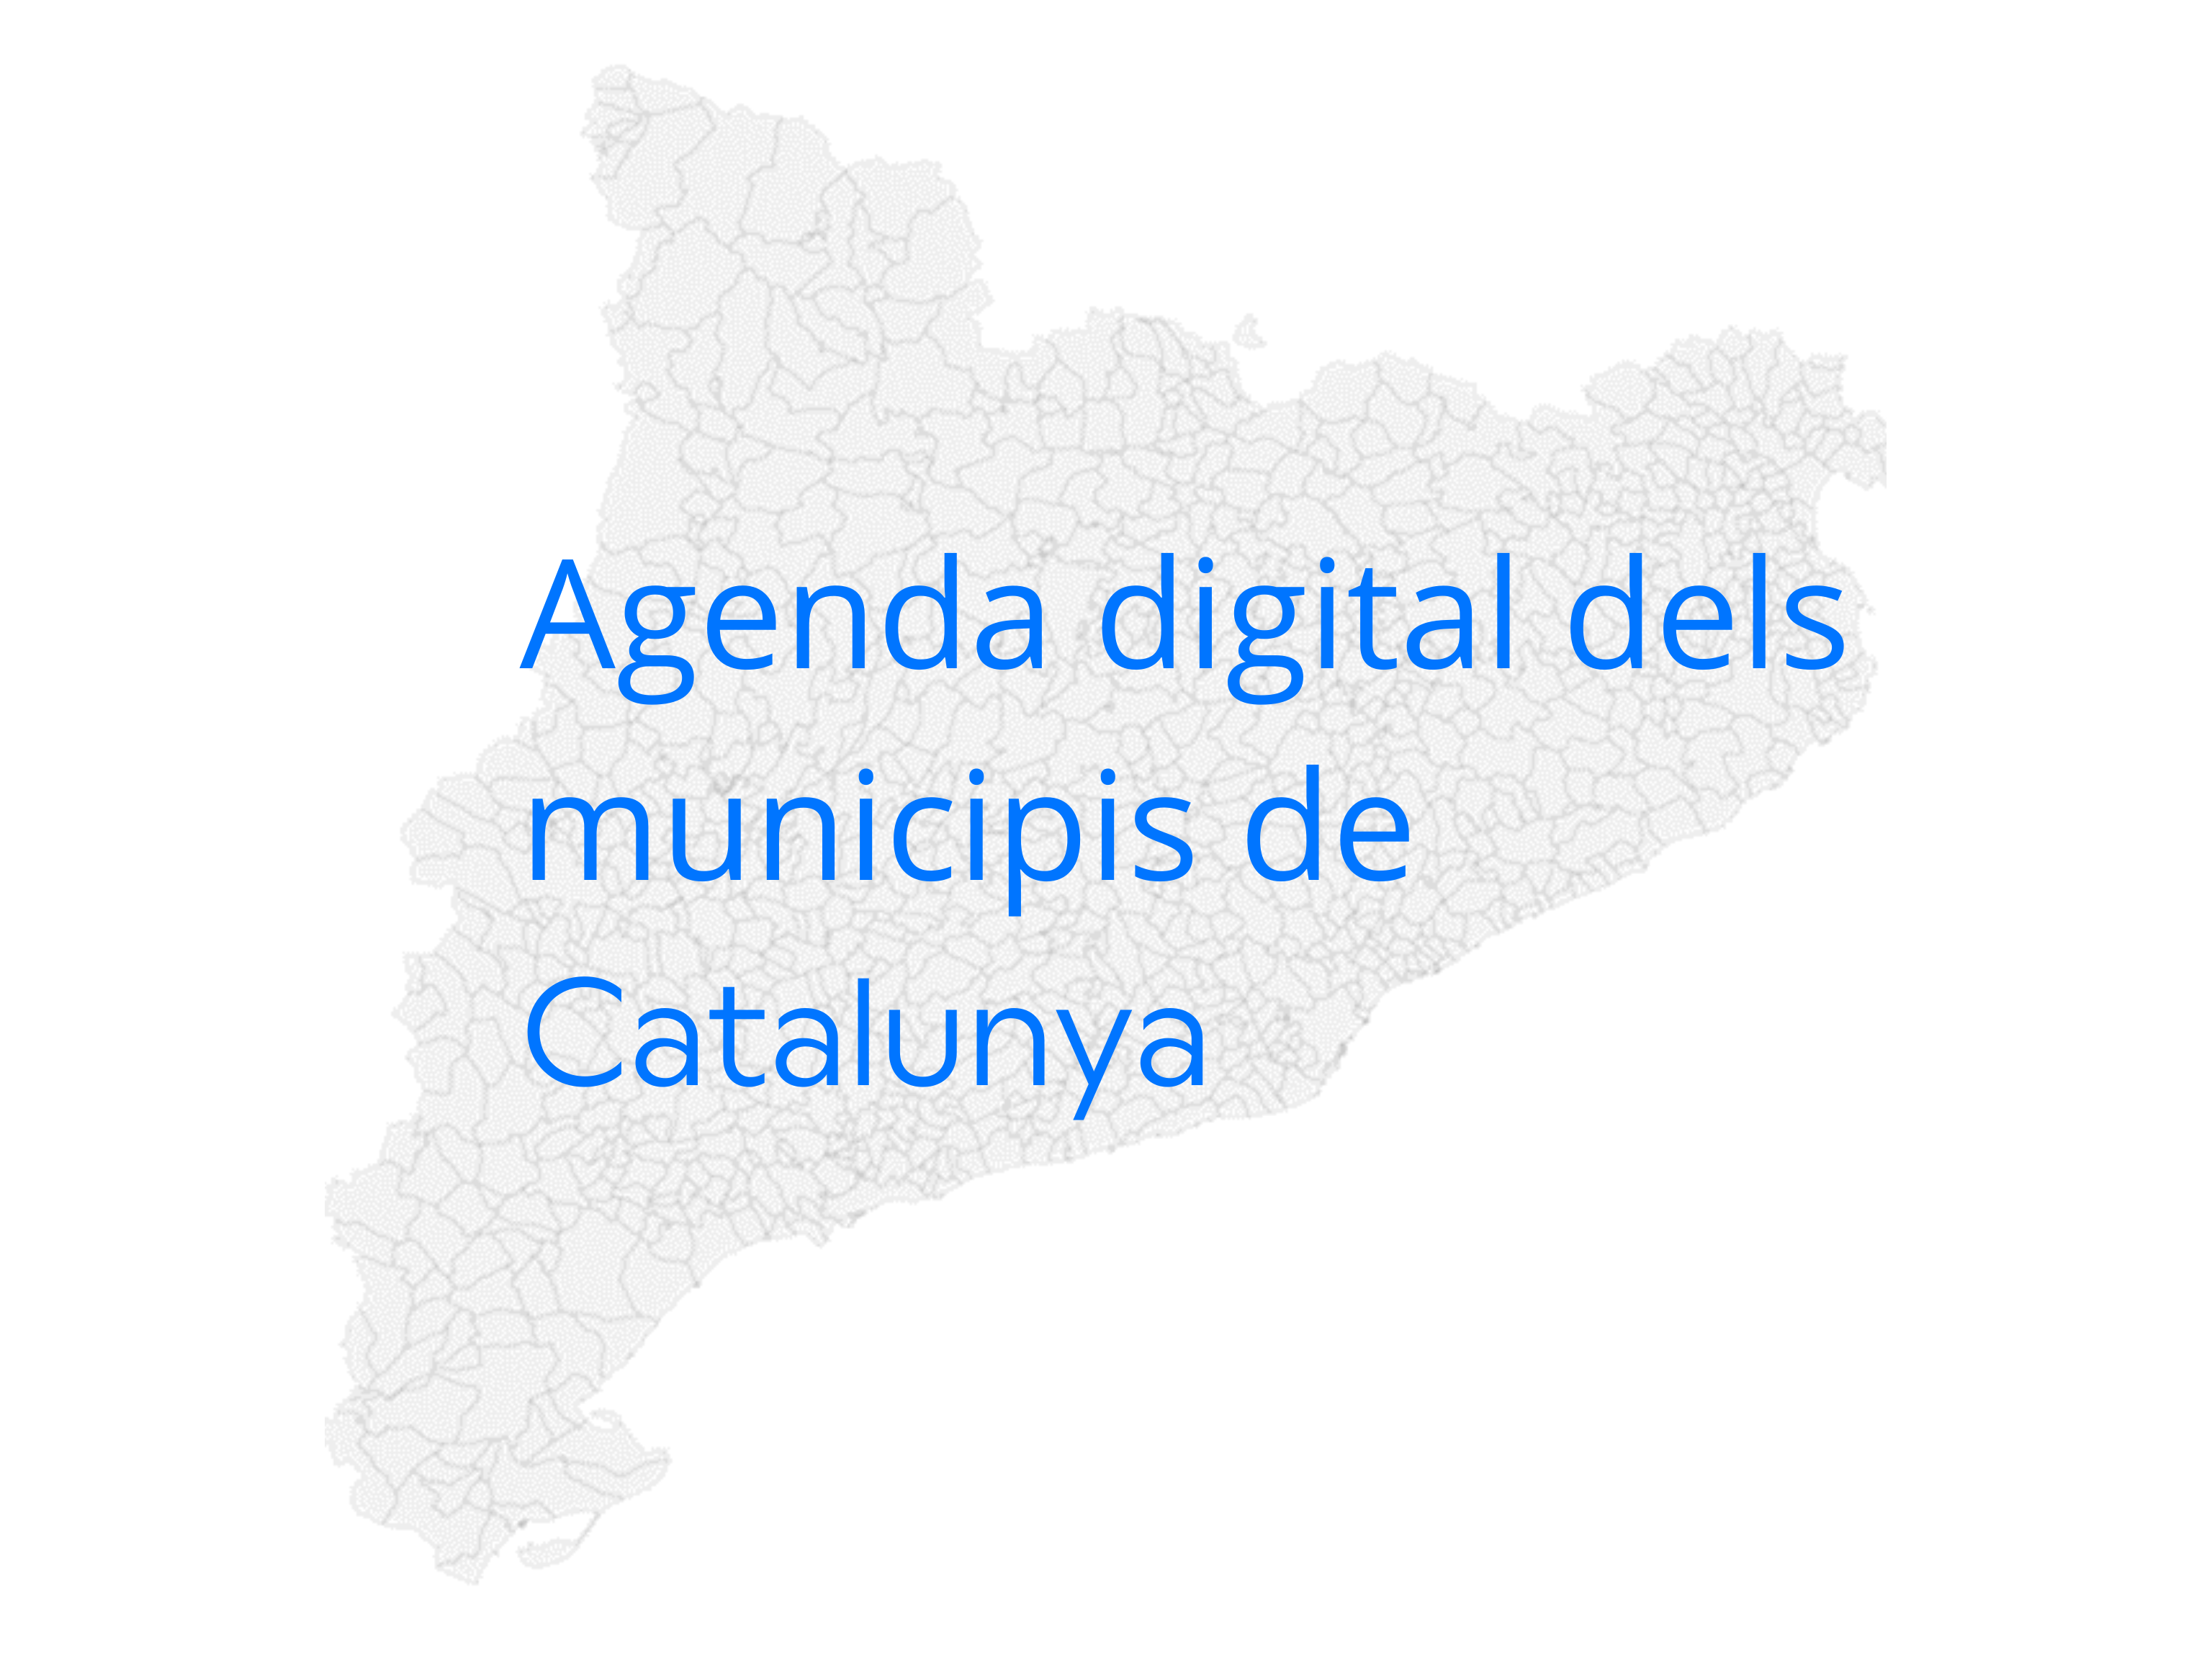 Mapa Catalunya Agenda digital